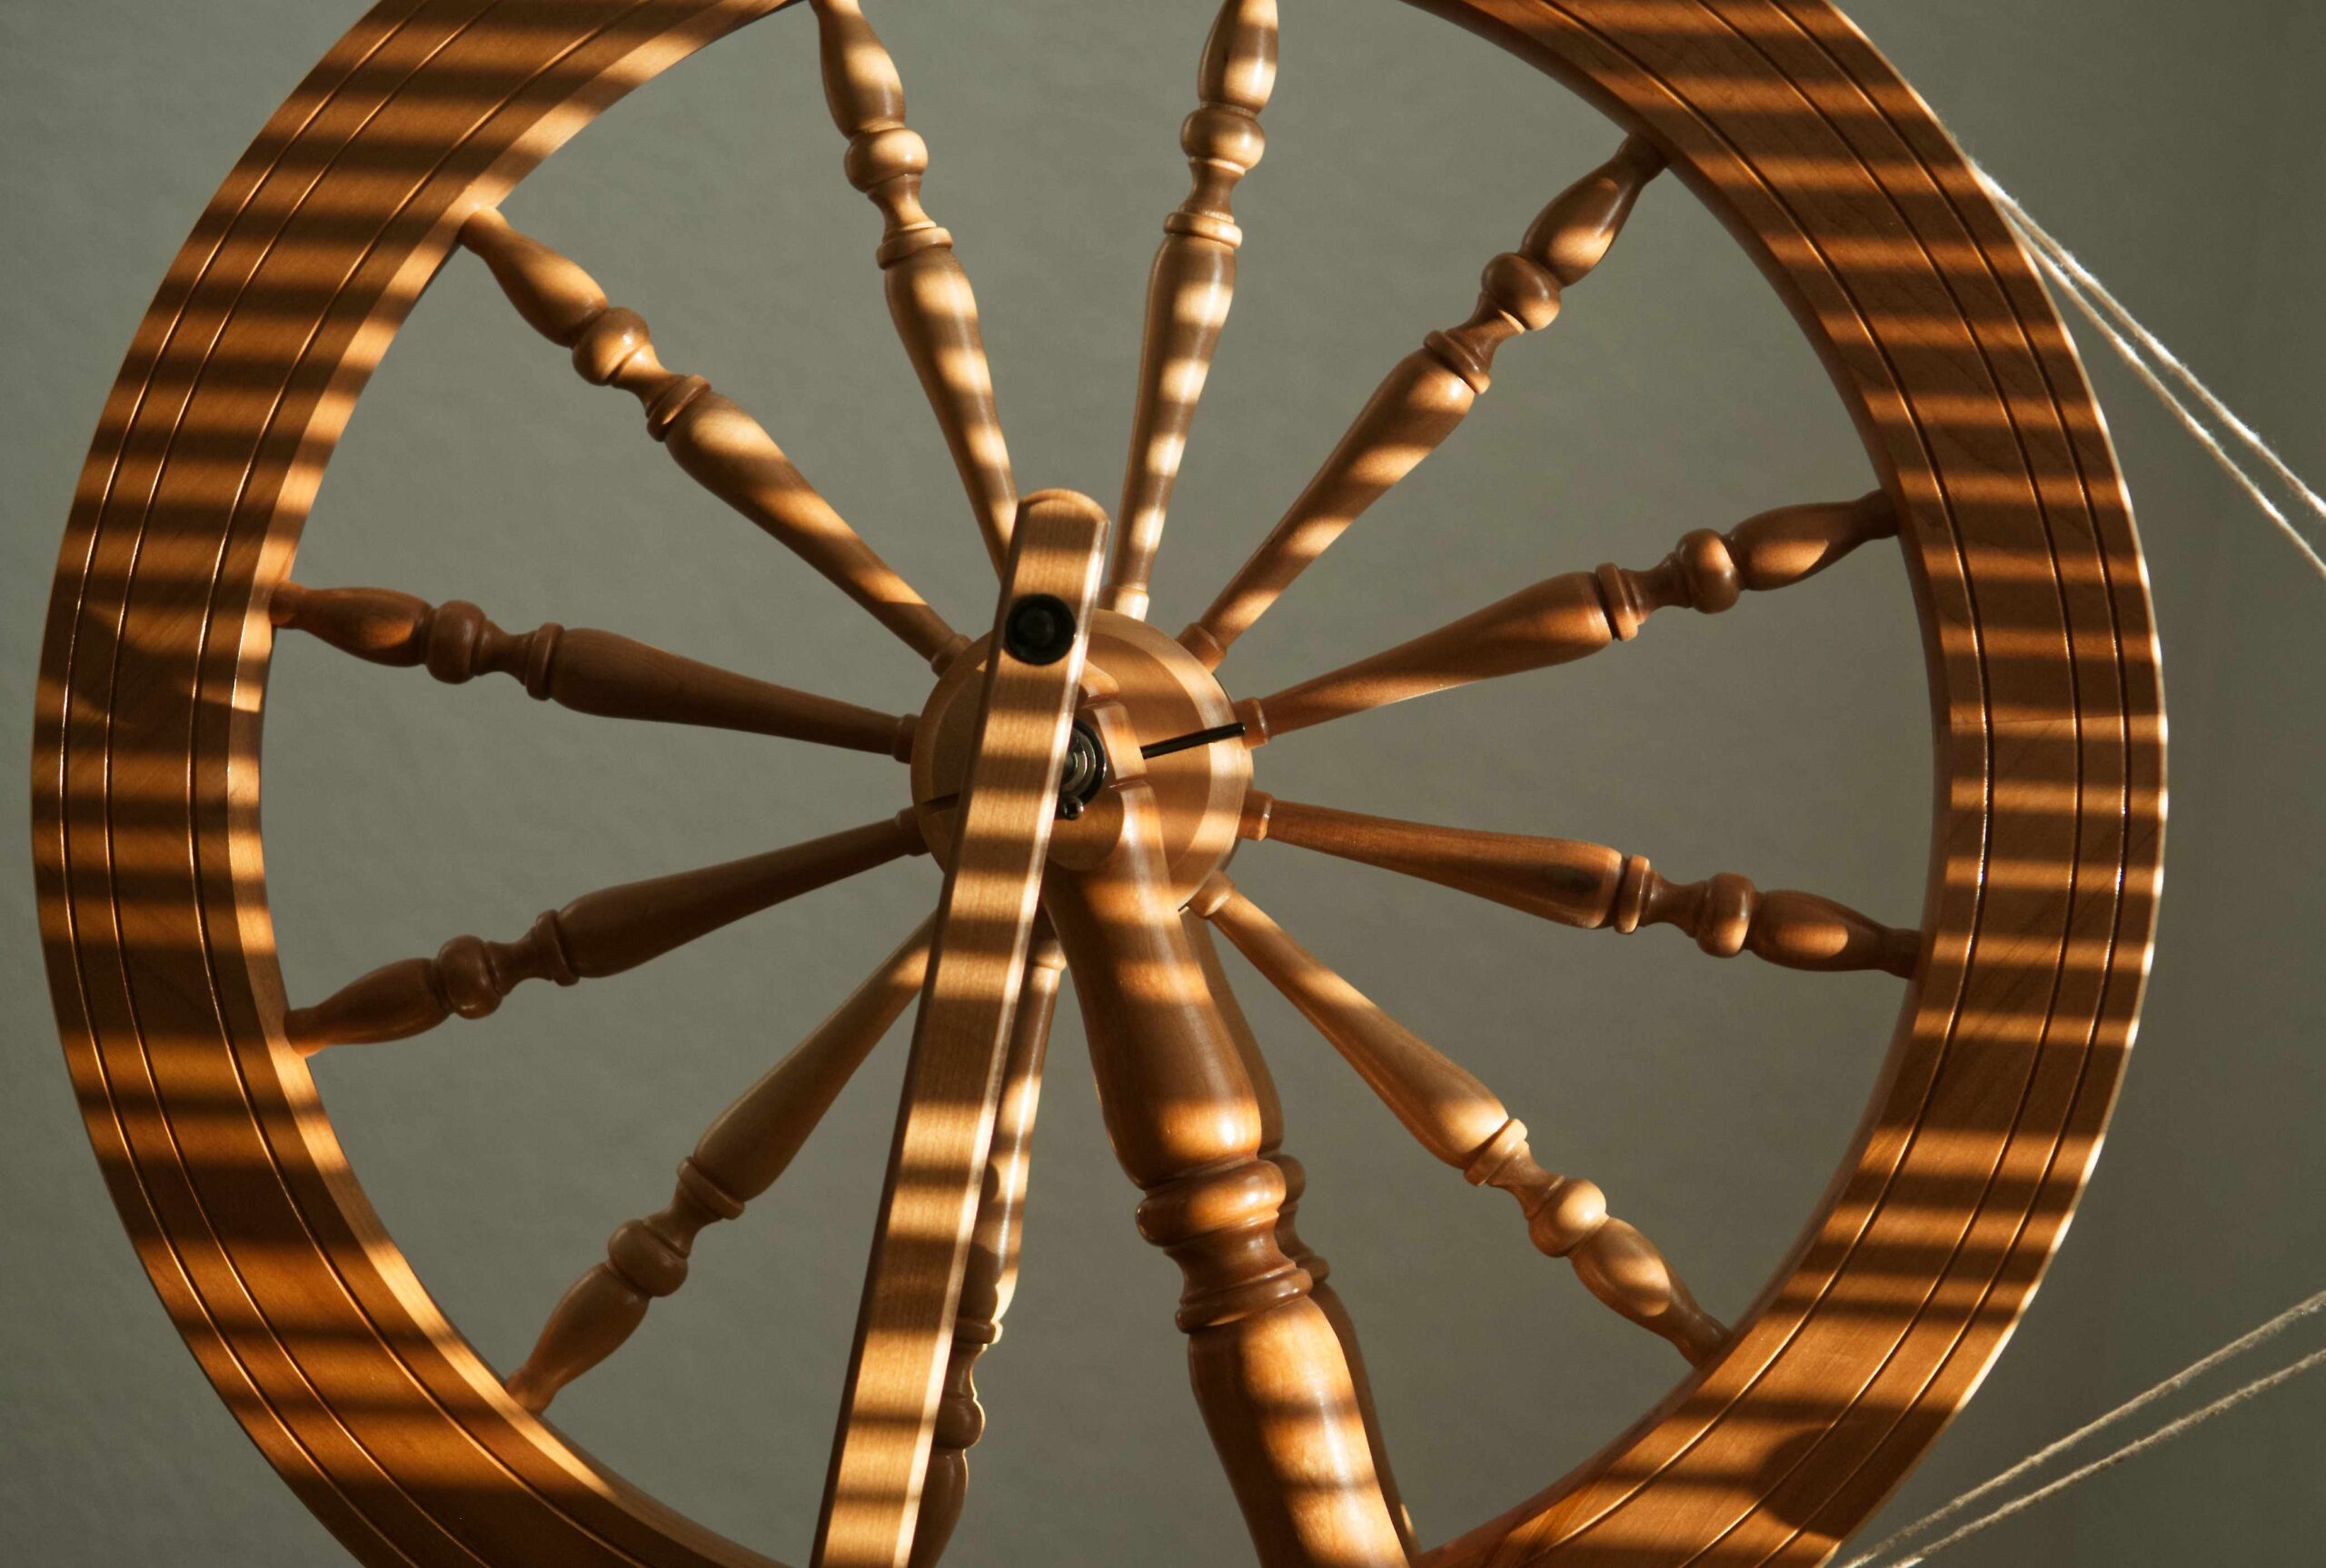 Image: spinning wheel